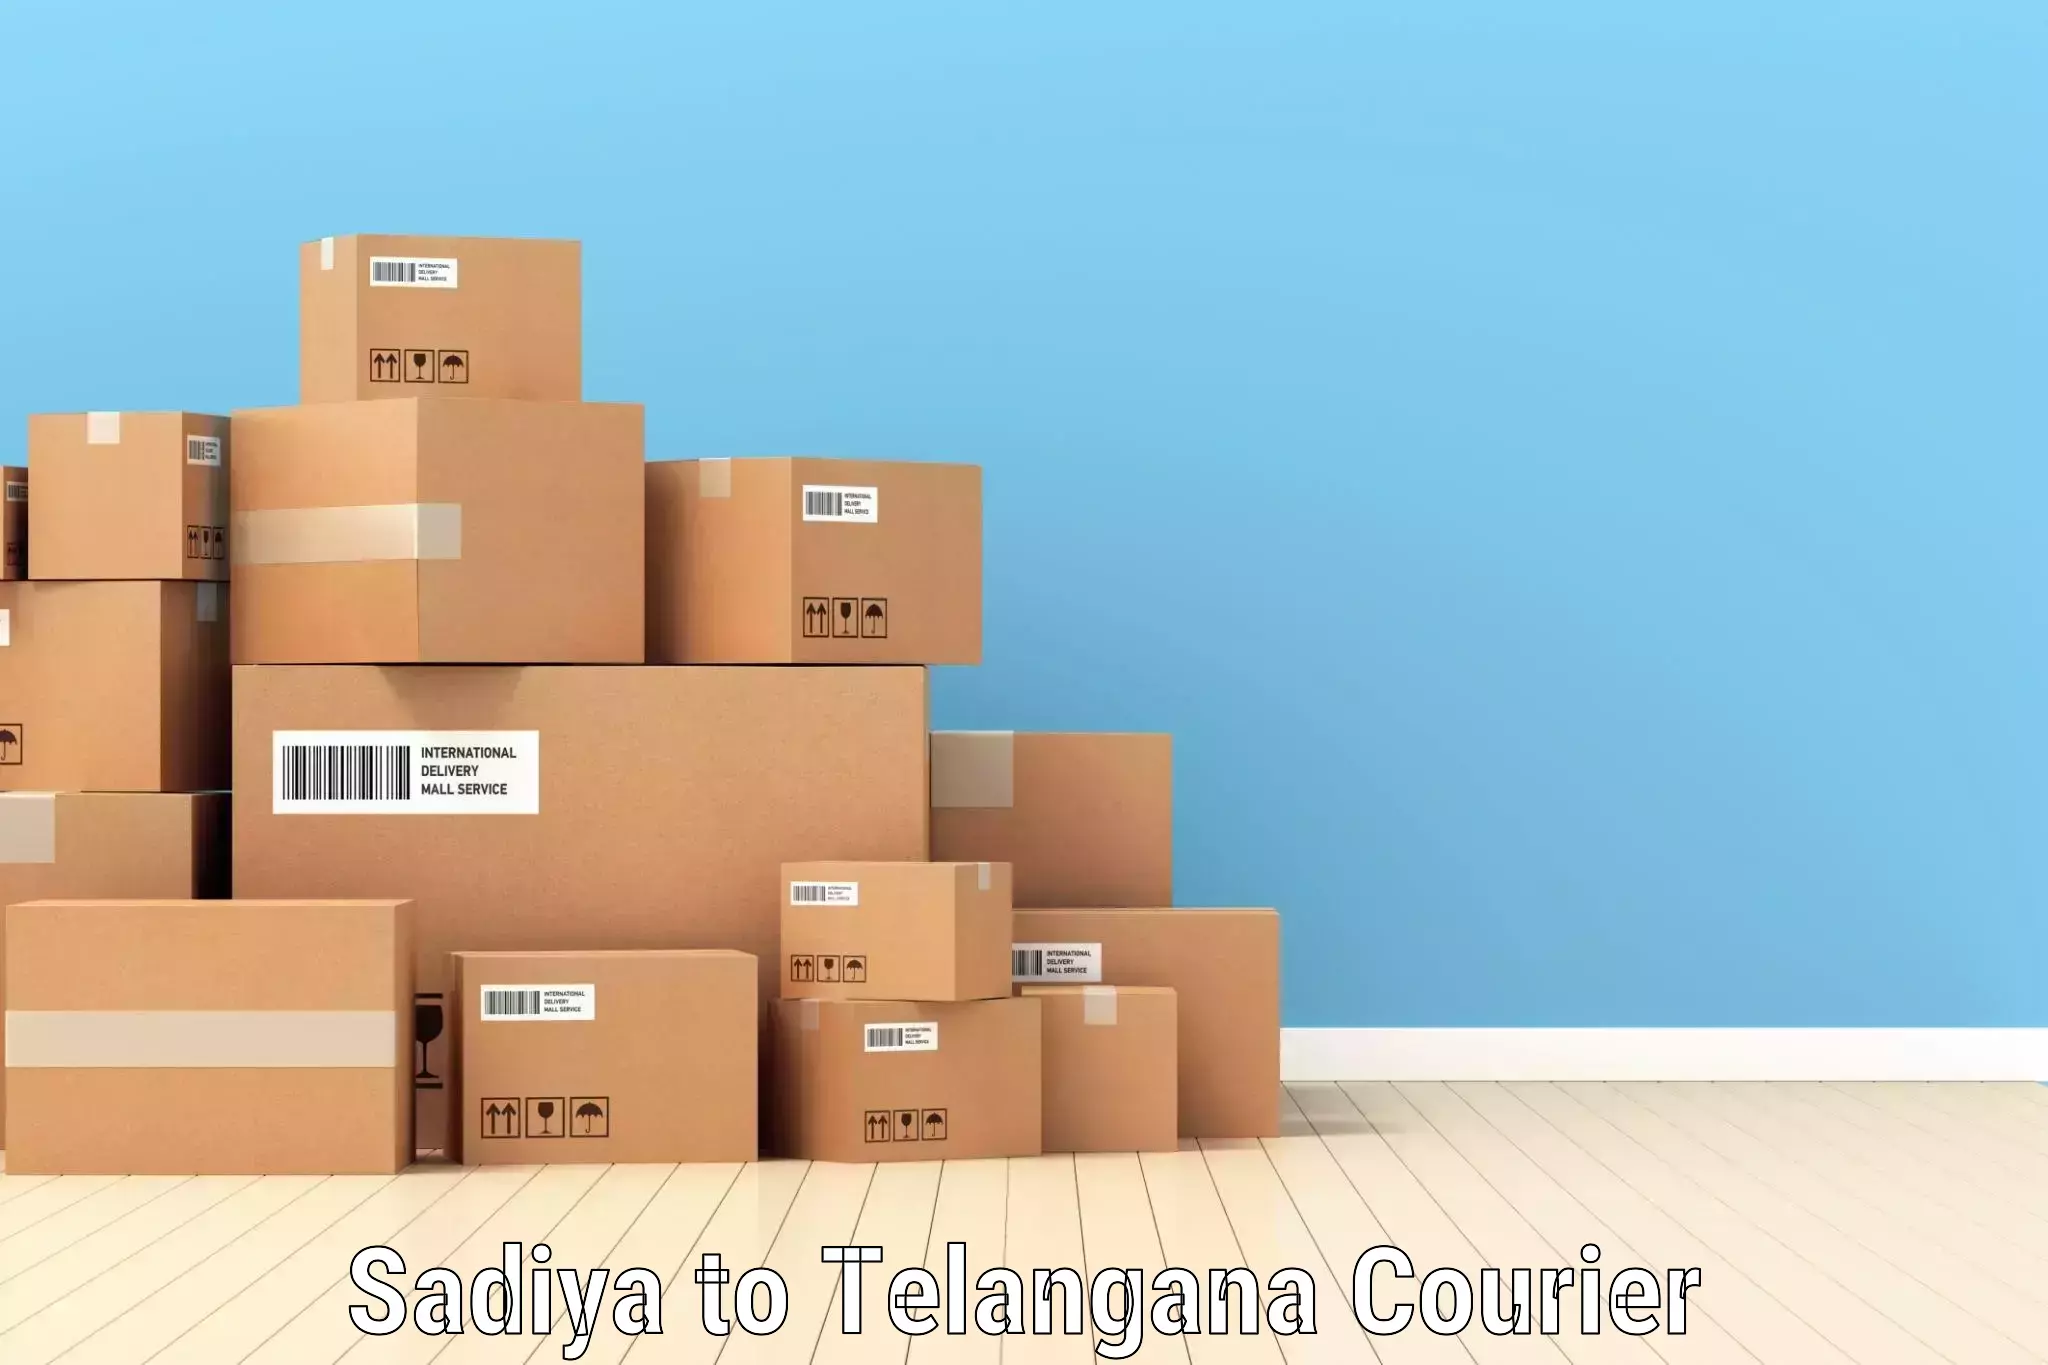 Express delivery capabilities Sadiya to Telangana